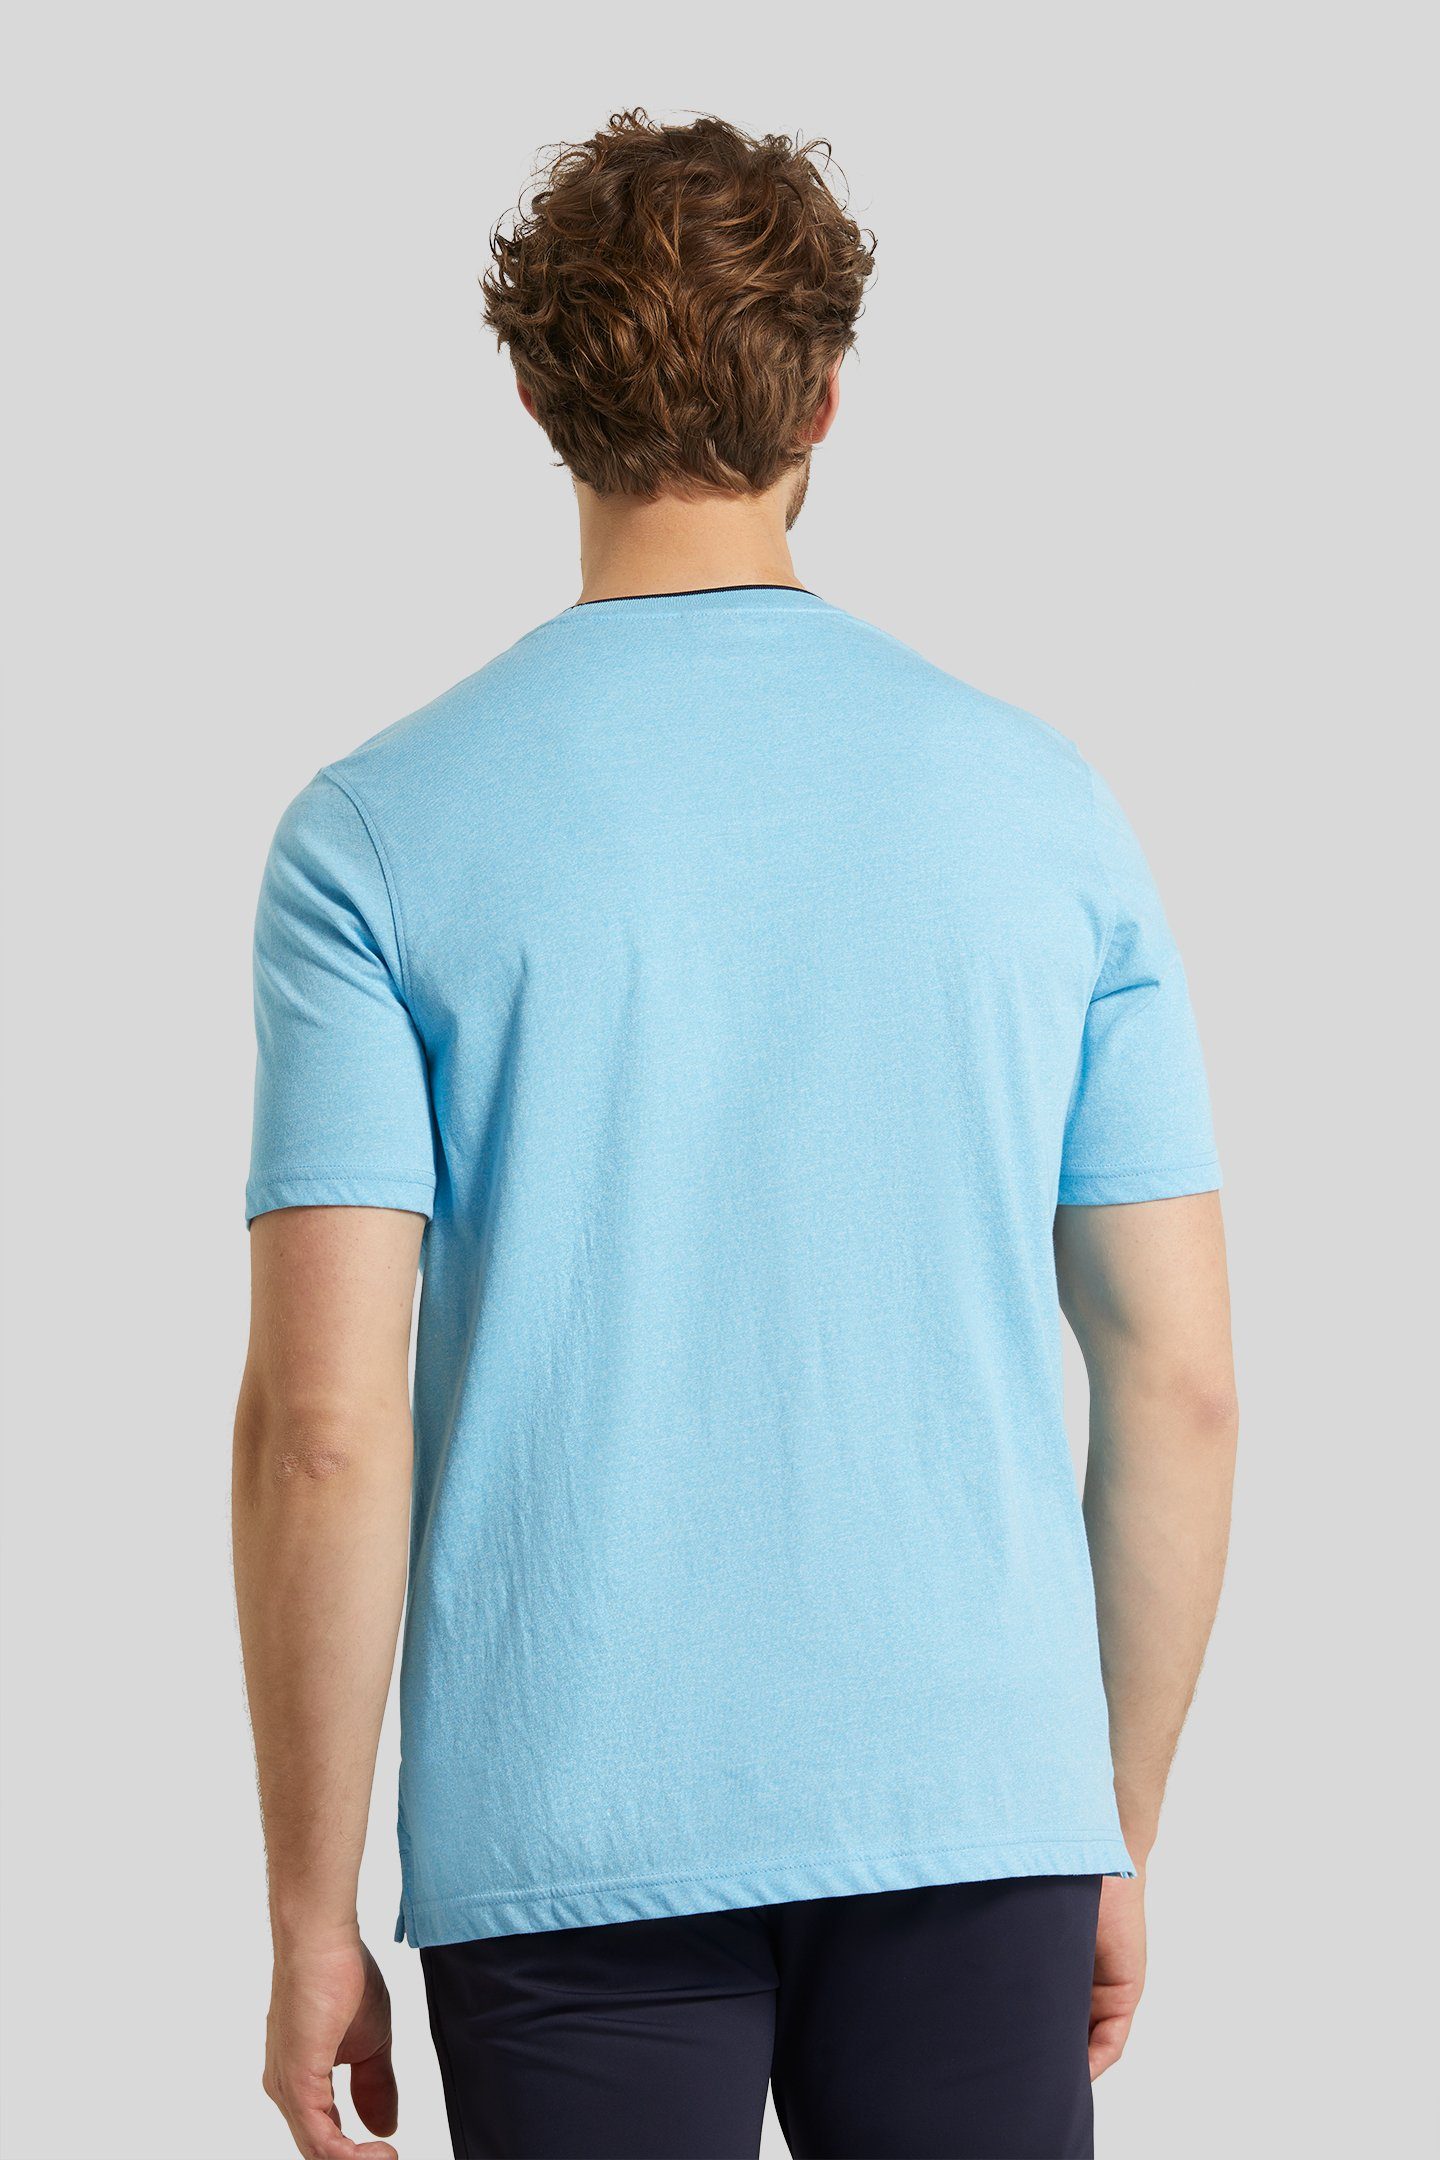 bugatti T-Shirt mit großem mittelblau Logo-Print bugatti